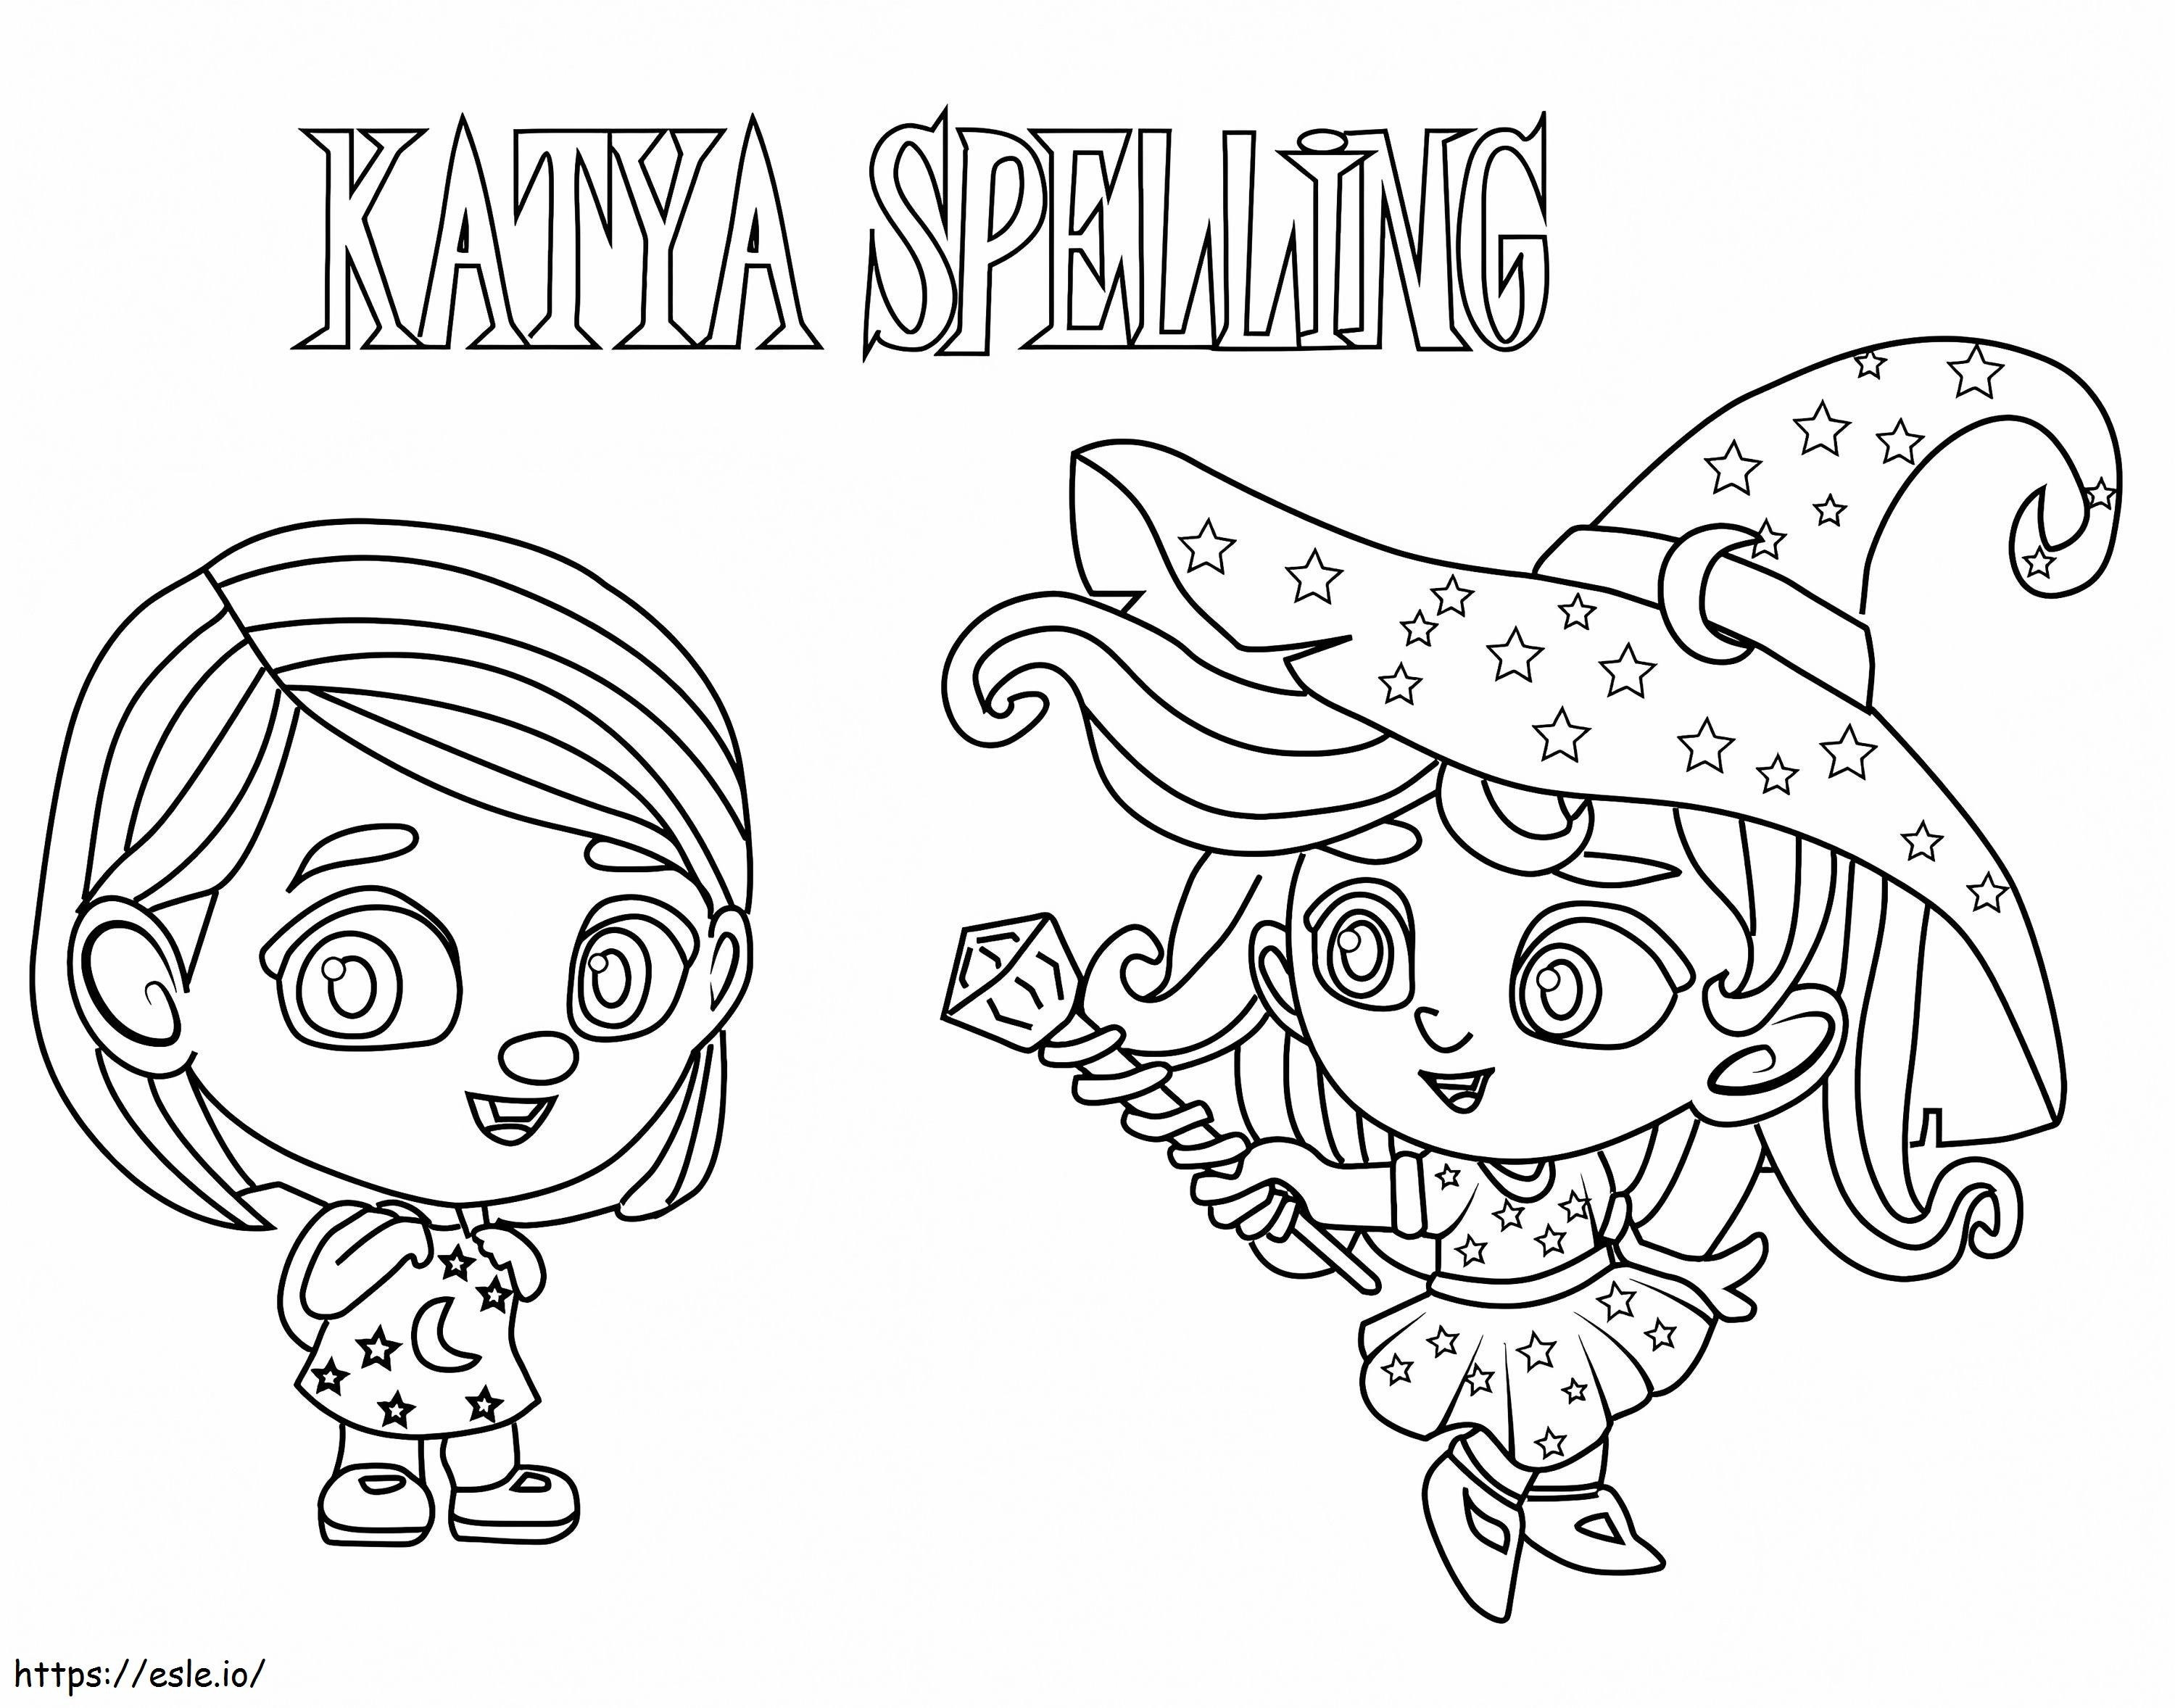 Katya-Rechtschreibung aus Supermonstern ausmalbilder